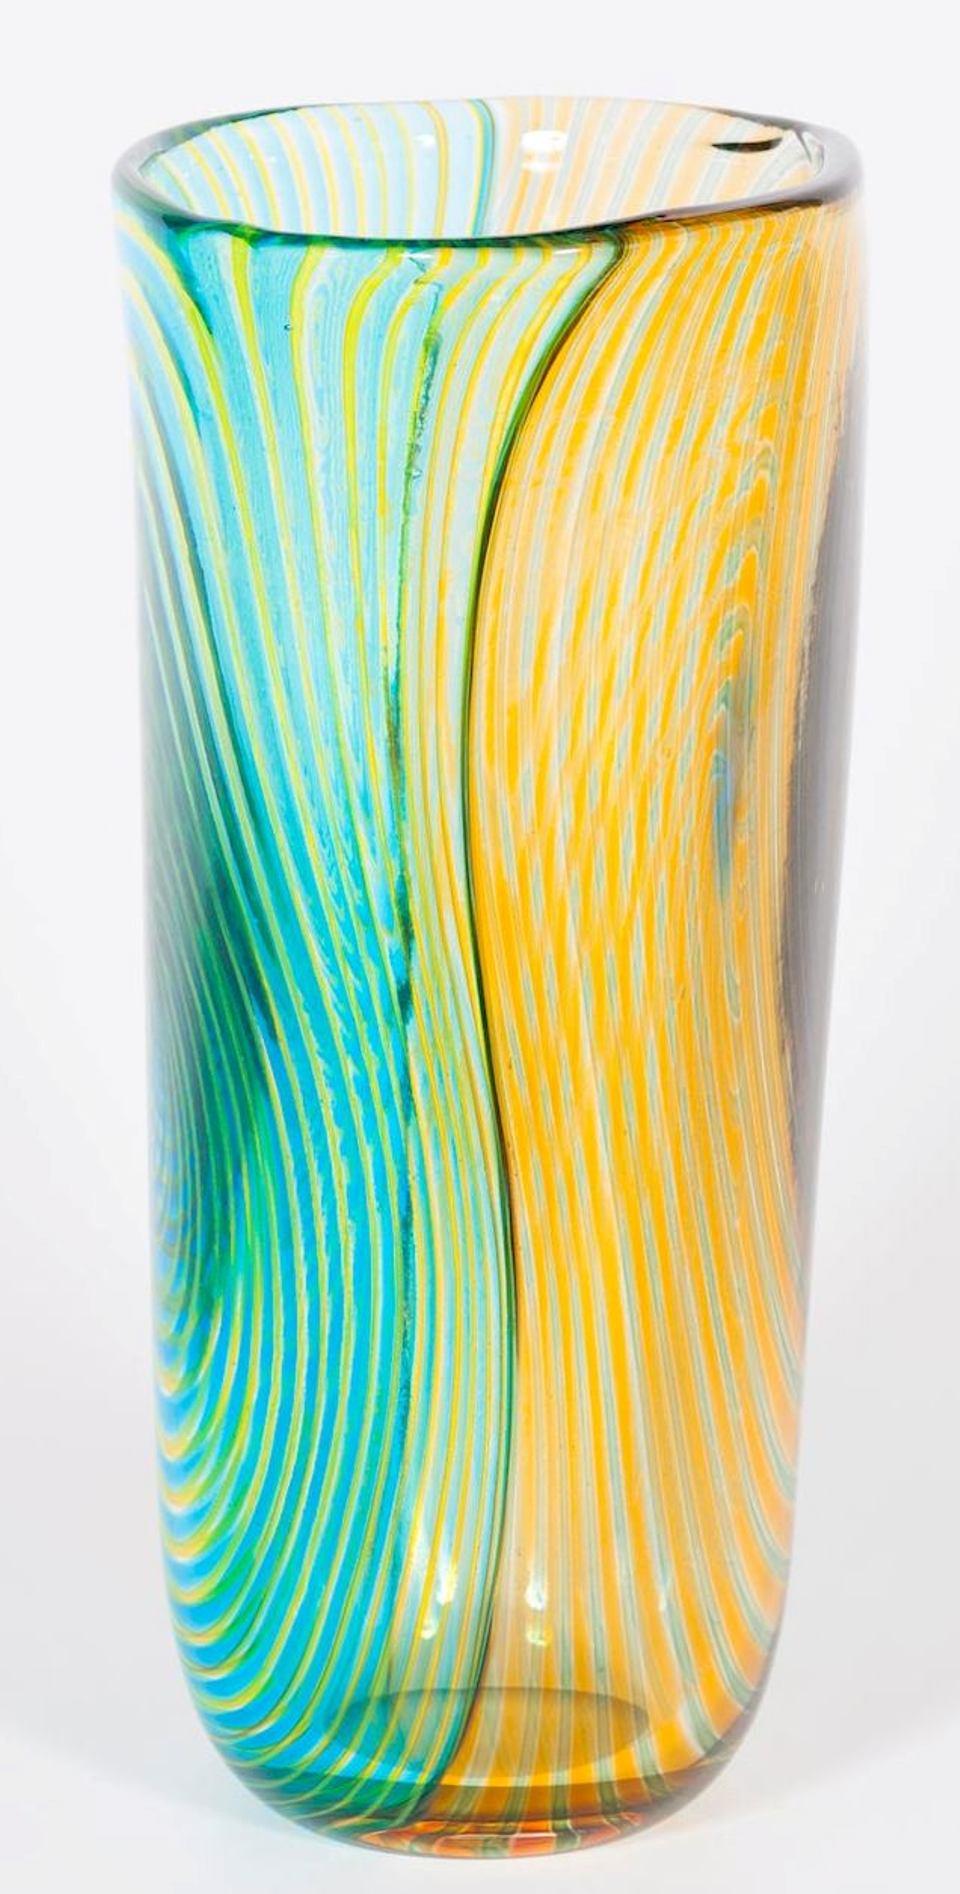 Vase rayé en verre soufflé de Murano vert orange et bleu clair, années 1990, Italie.
Il s'agit d'un vase rayé unique, avec des côtés bicolores et des rayures à l'intérieur de la technique soufflée. La moitié est sur une base de couleur orange, et